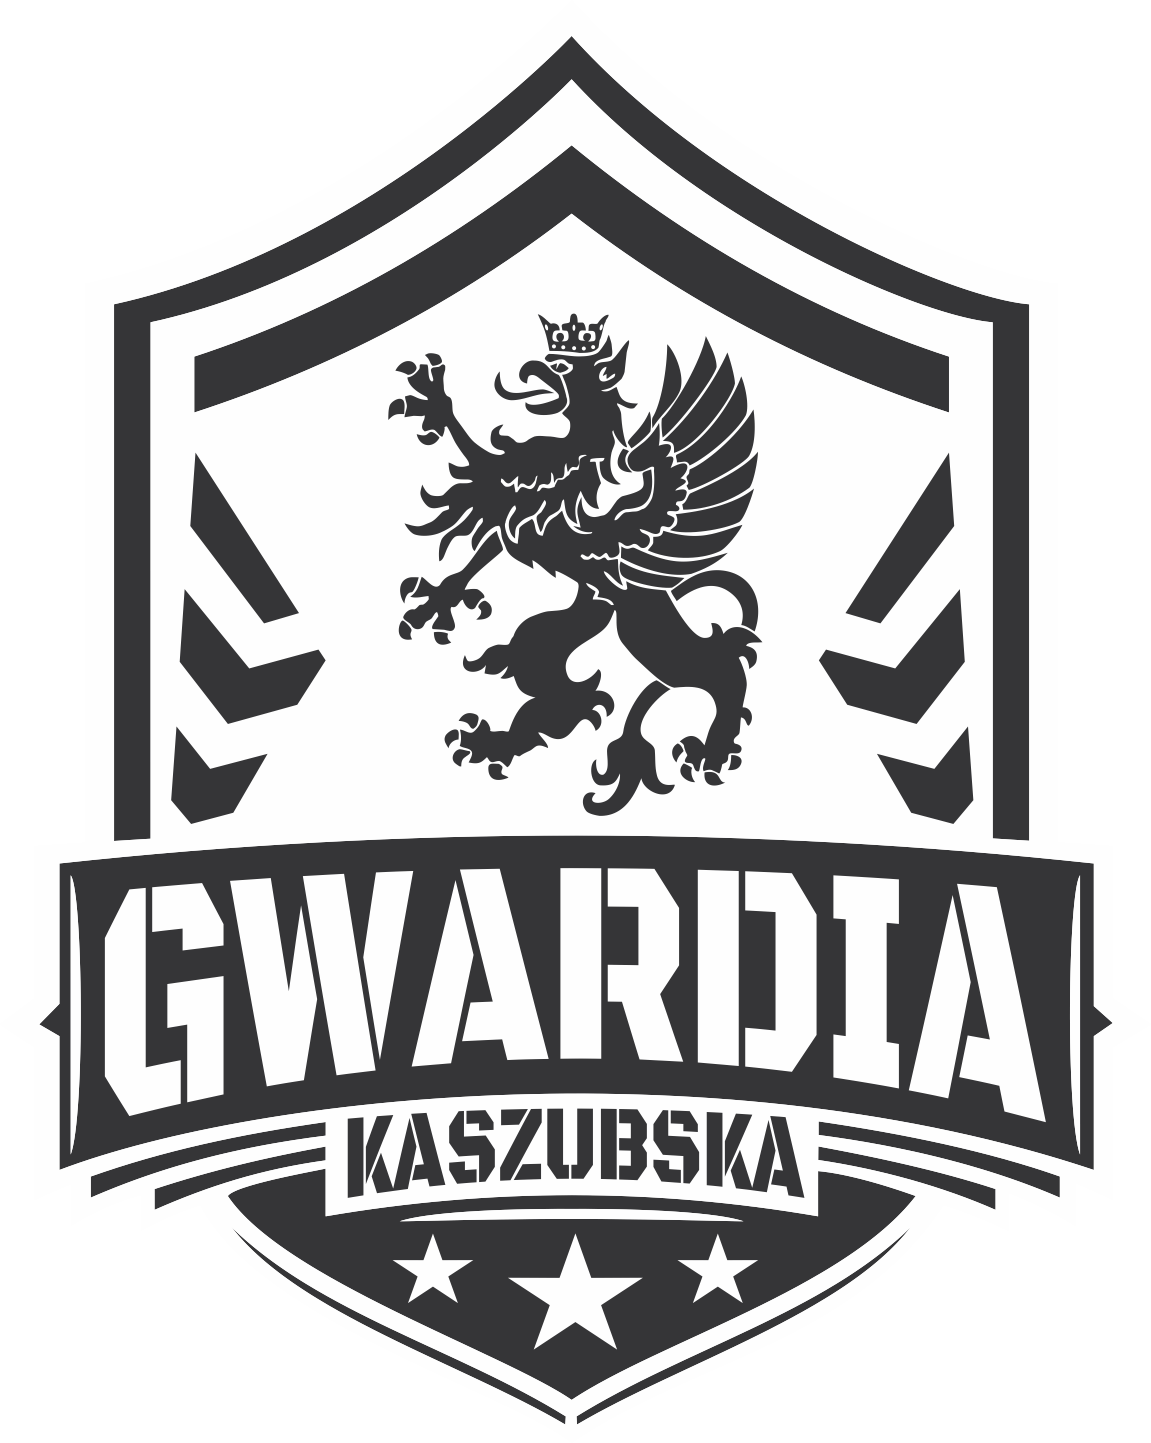 Gwardia Kaszubska